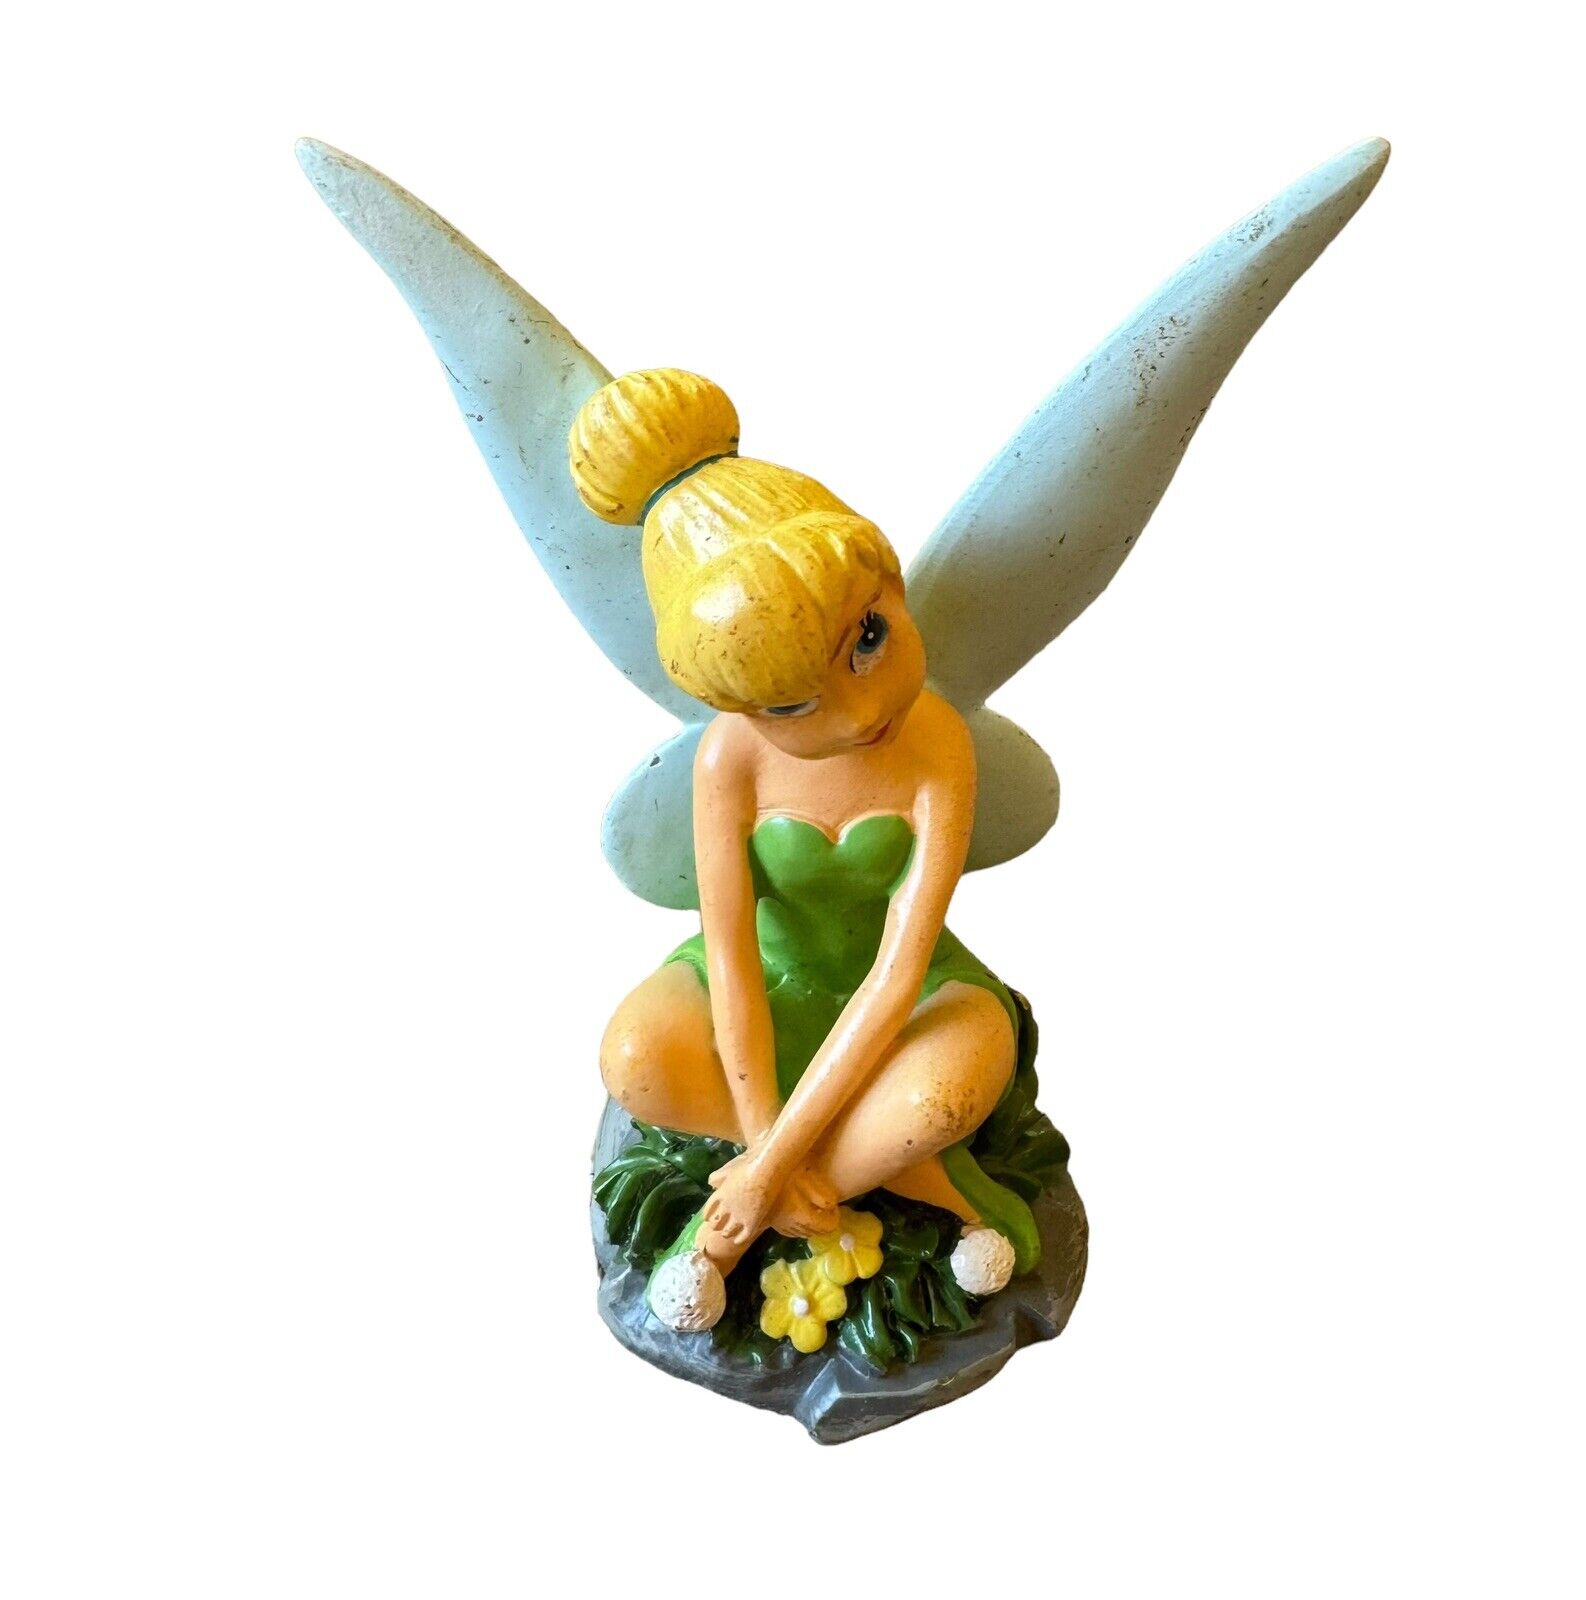 Vintage Resin Disney Statue Tinkerbell Sitting Crossleg (Peter Pan) 3.9” x 3.25”